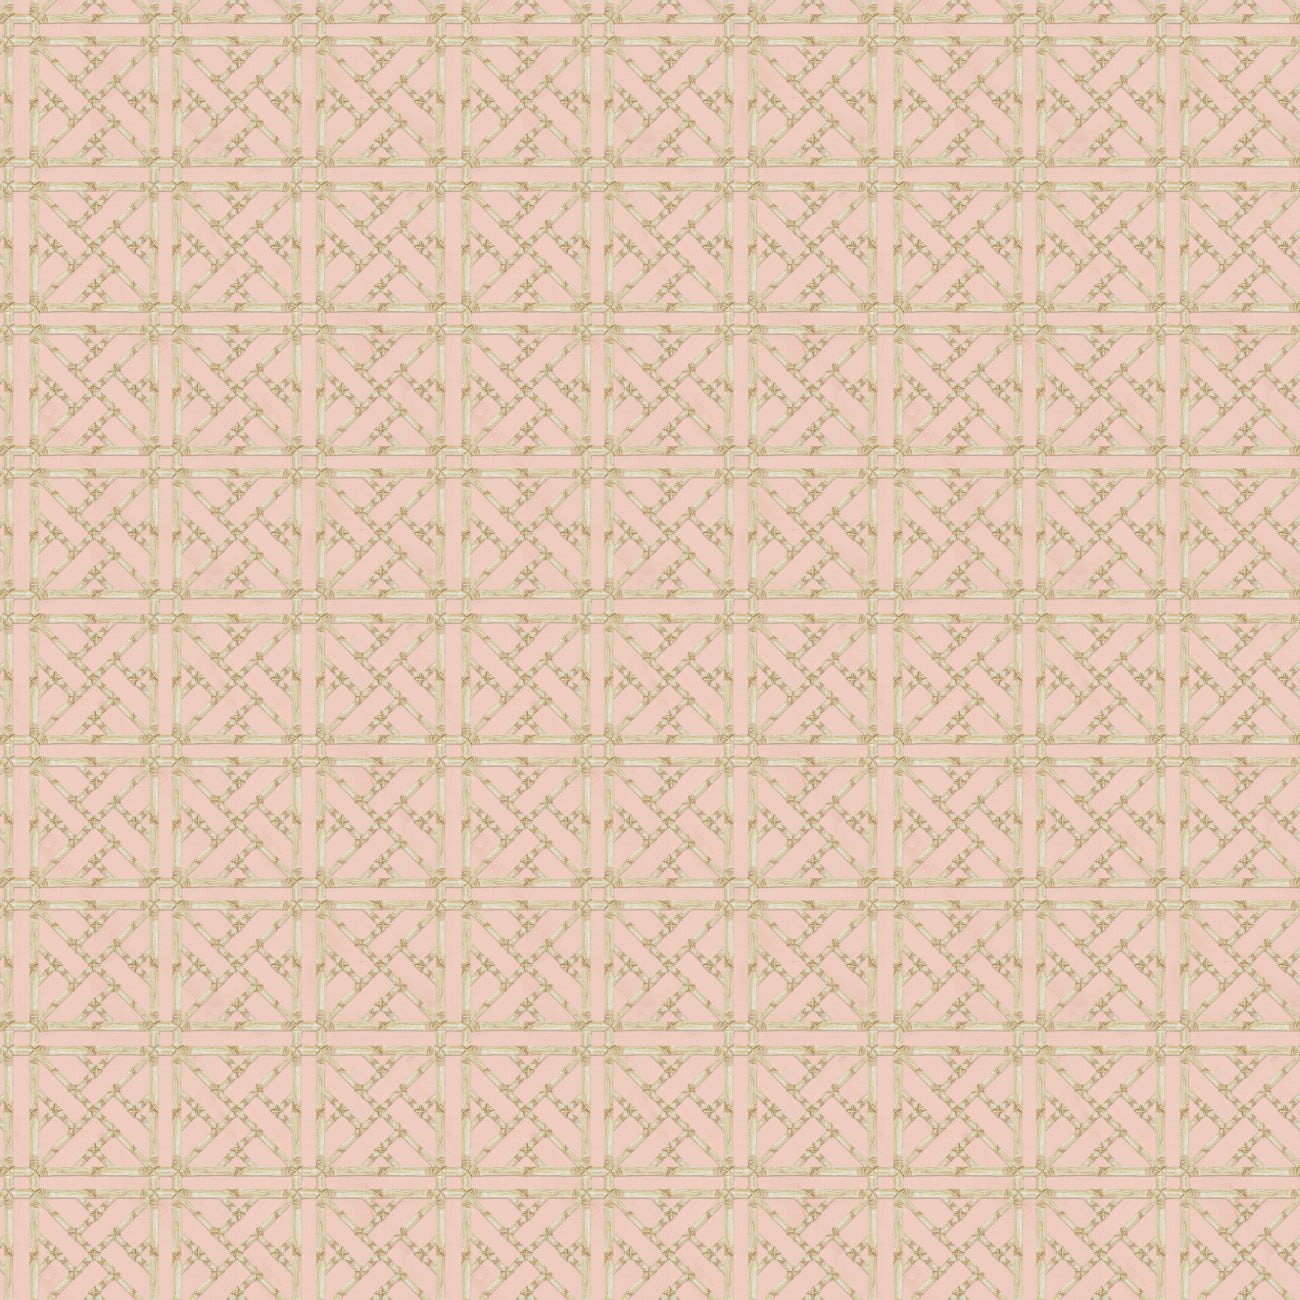 Bloom Tapestry Collection-Treillis d'Auvent-Rose Poudre-100% Cotton-55230805-02